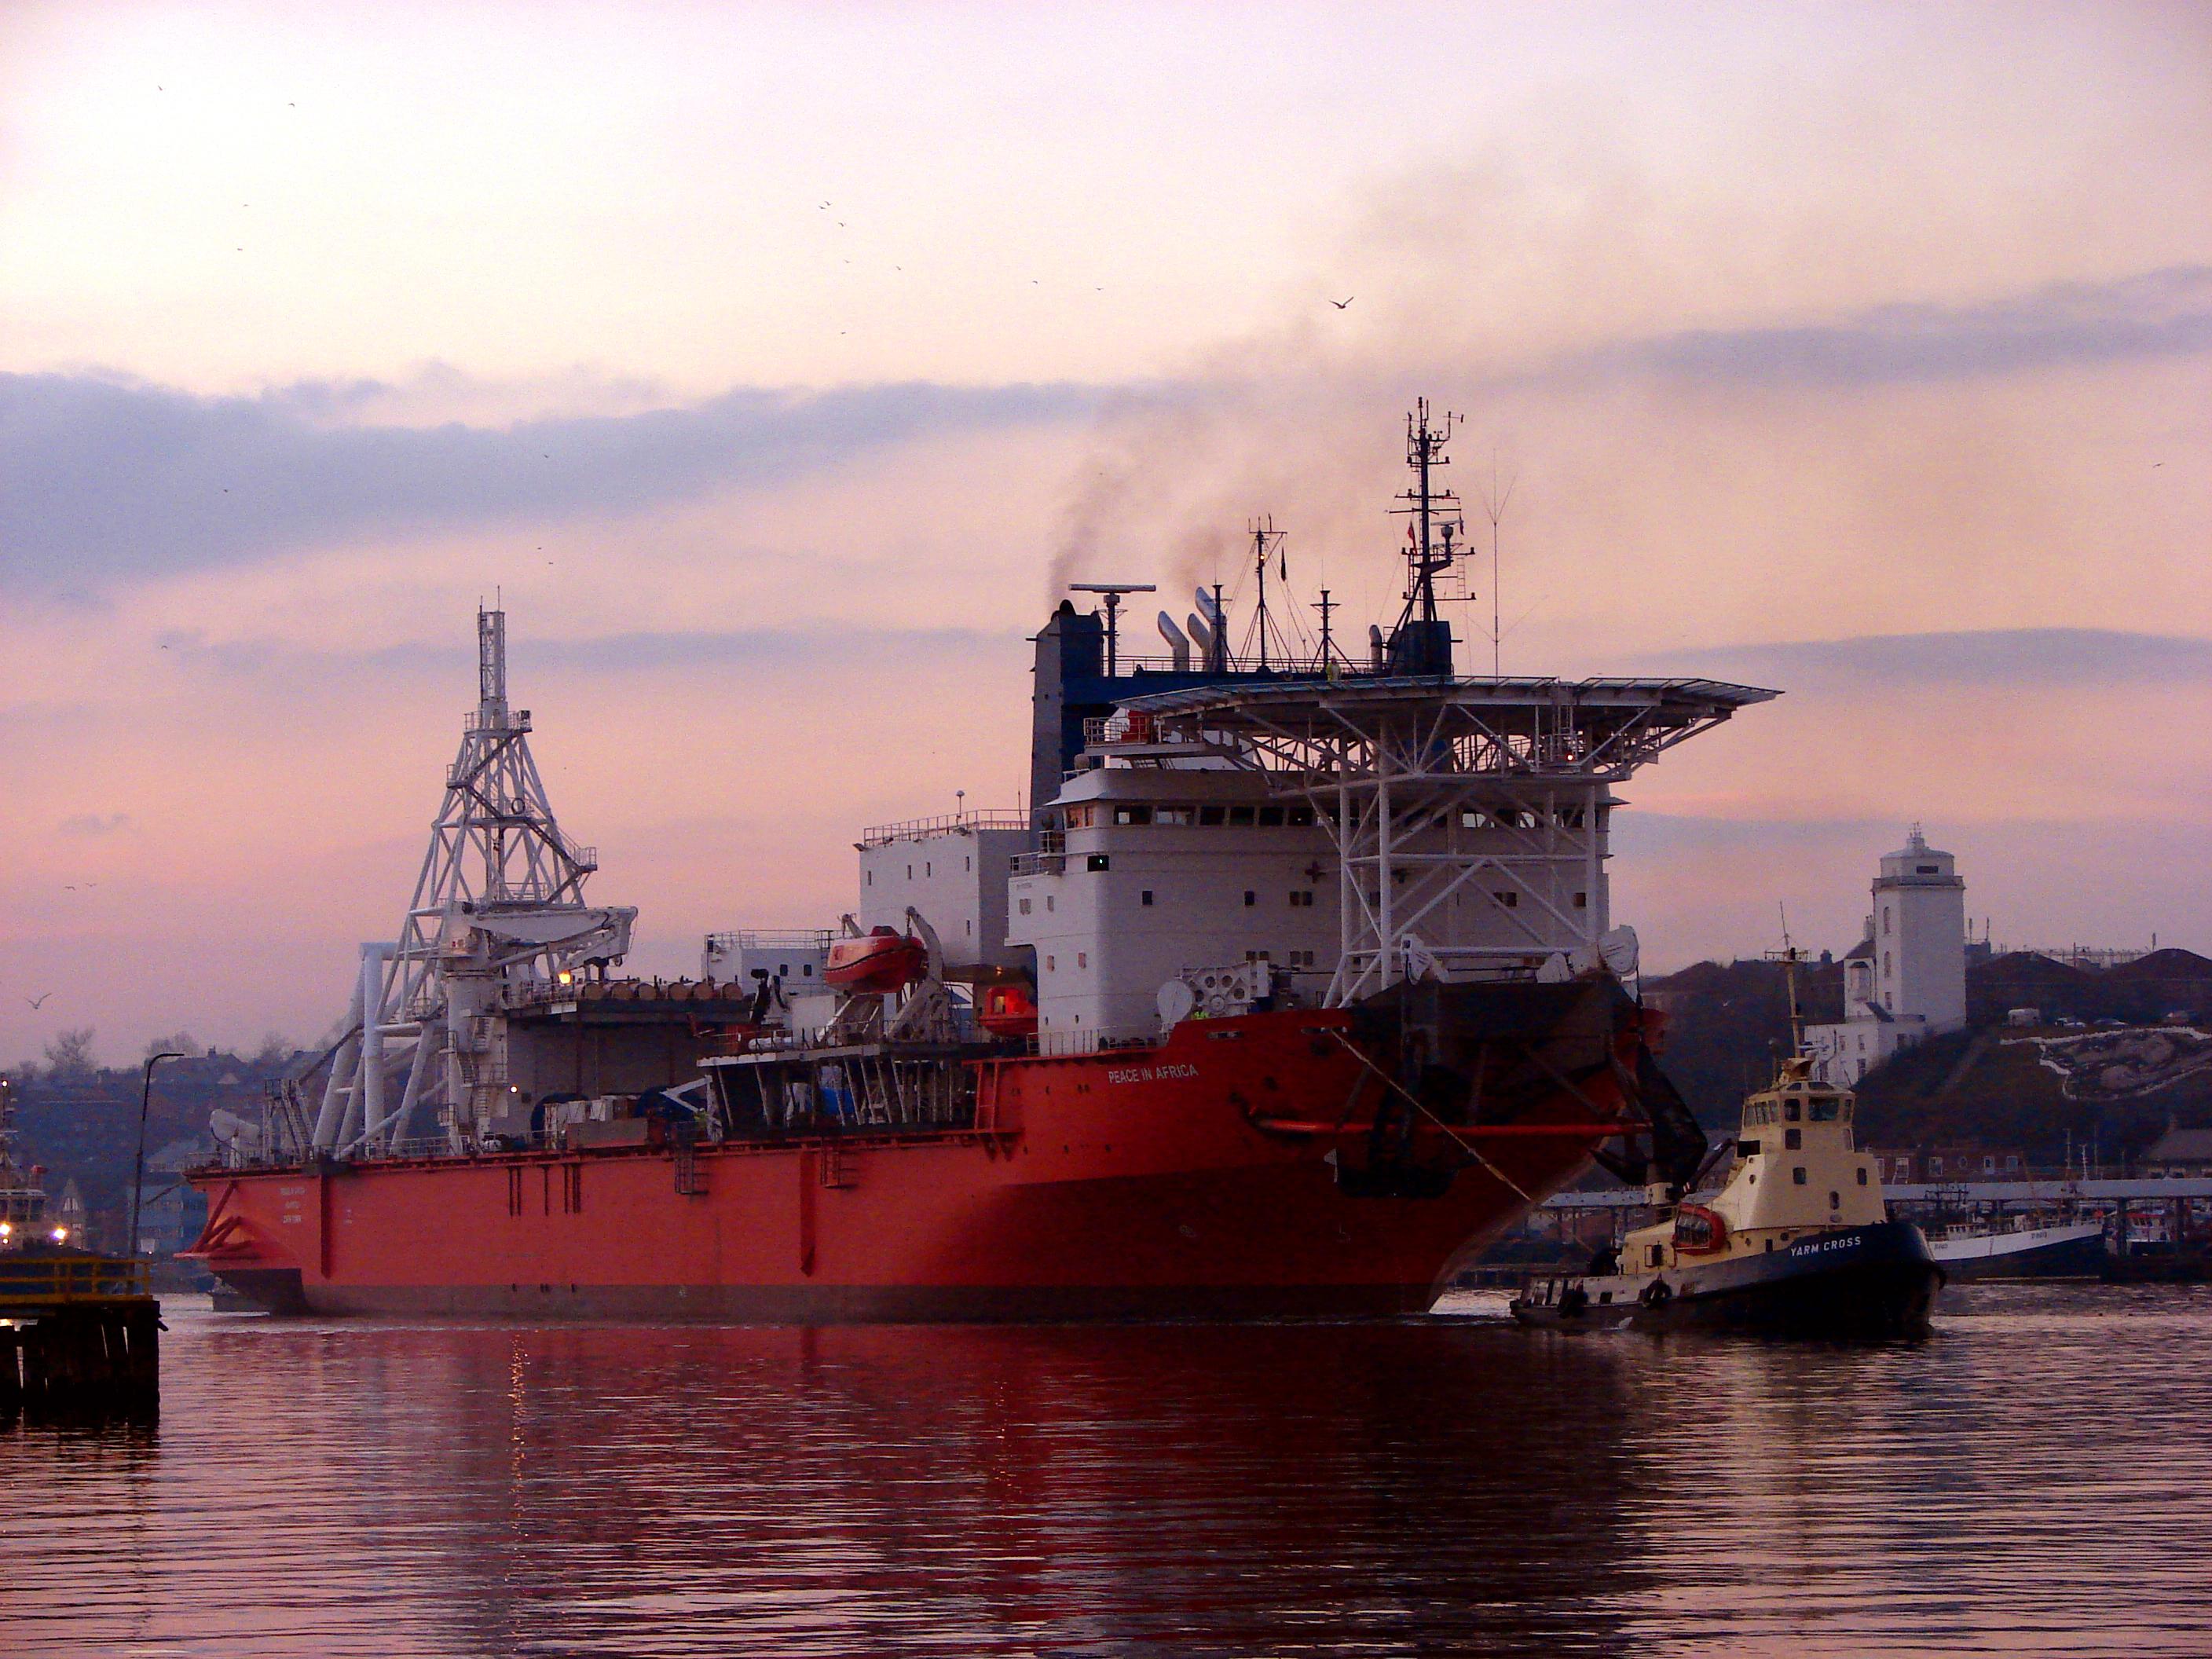 De Beers offshore mining vessel for ocean mining operations